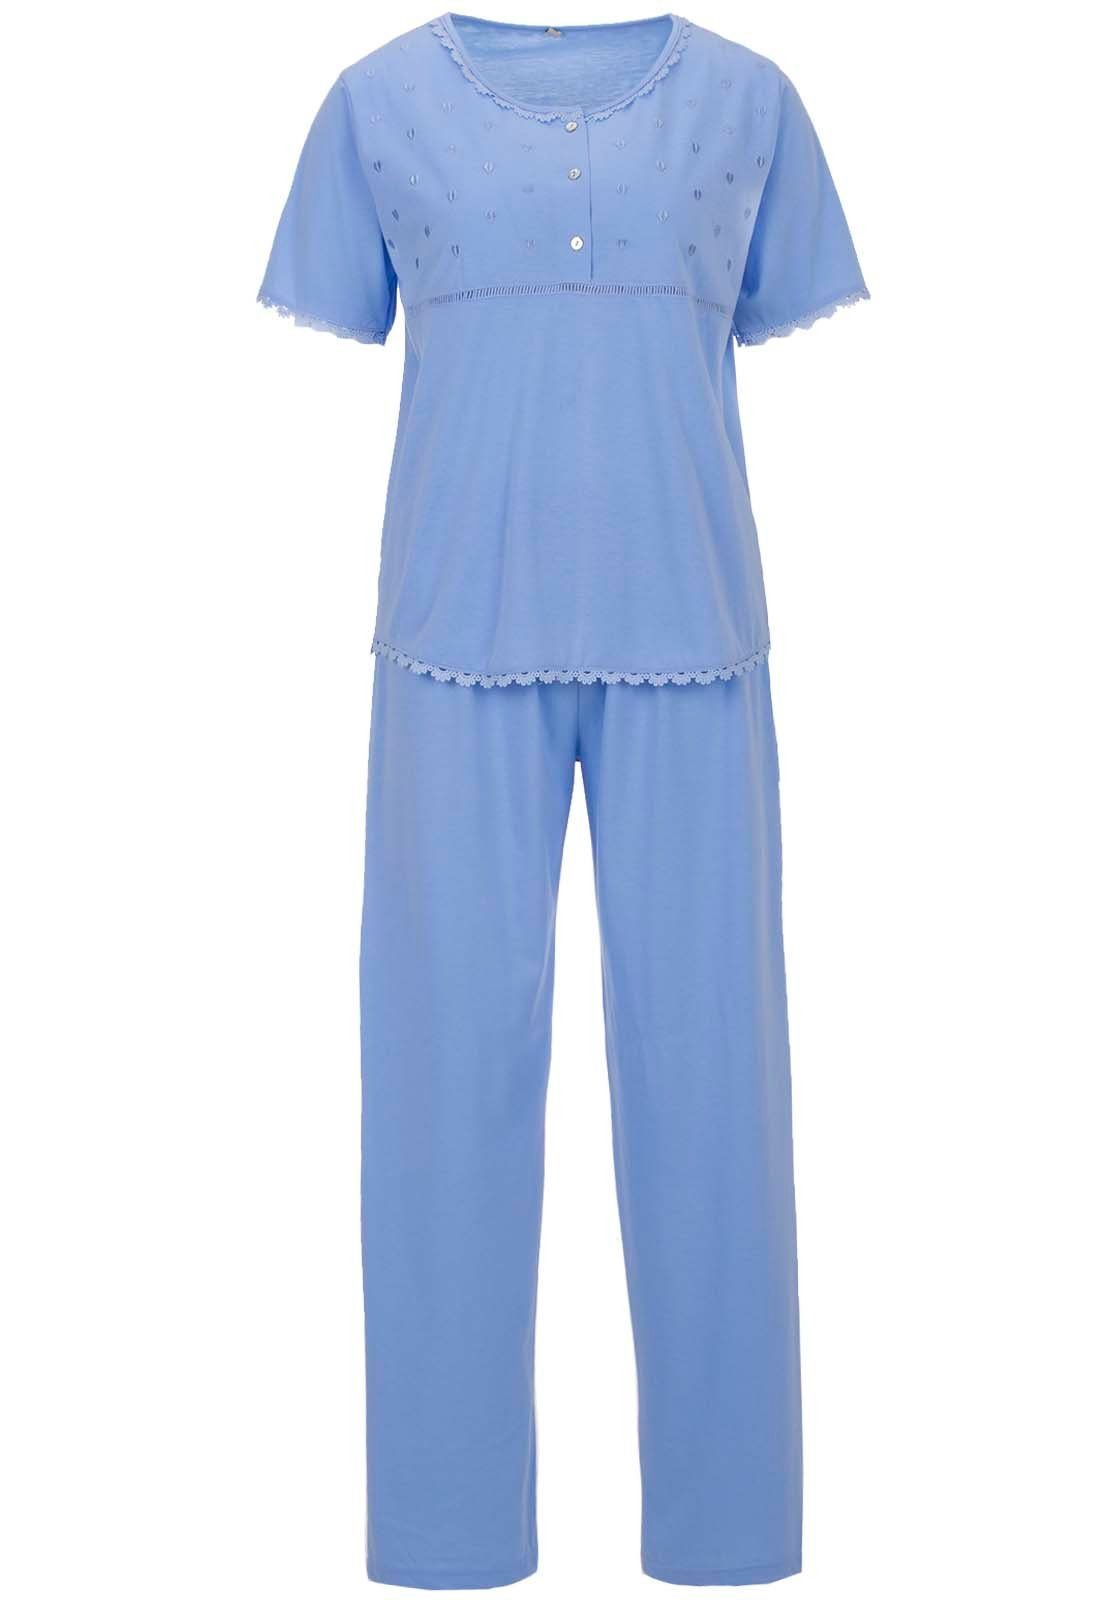 zeitlos Schlafanzug Pyjama Set Kurzarm Herz Spitze blau 